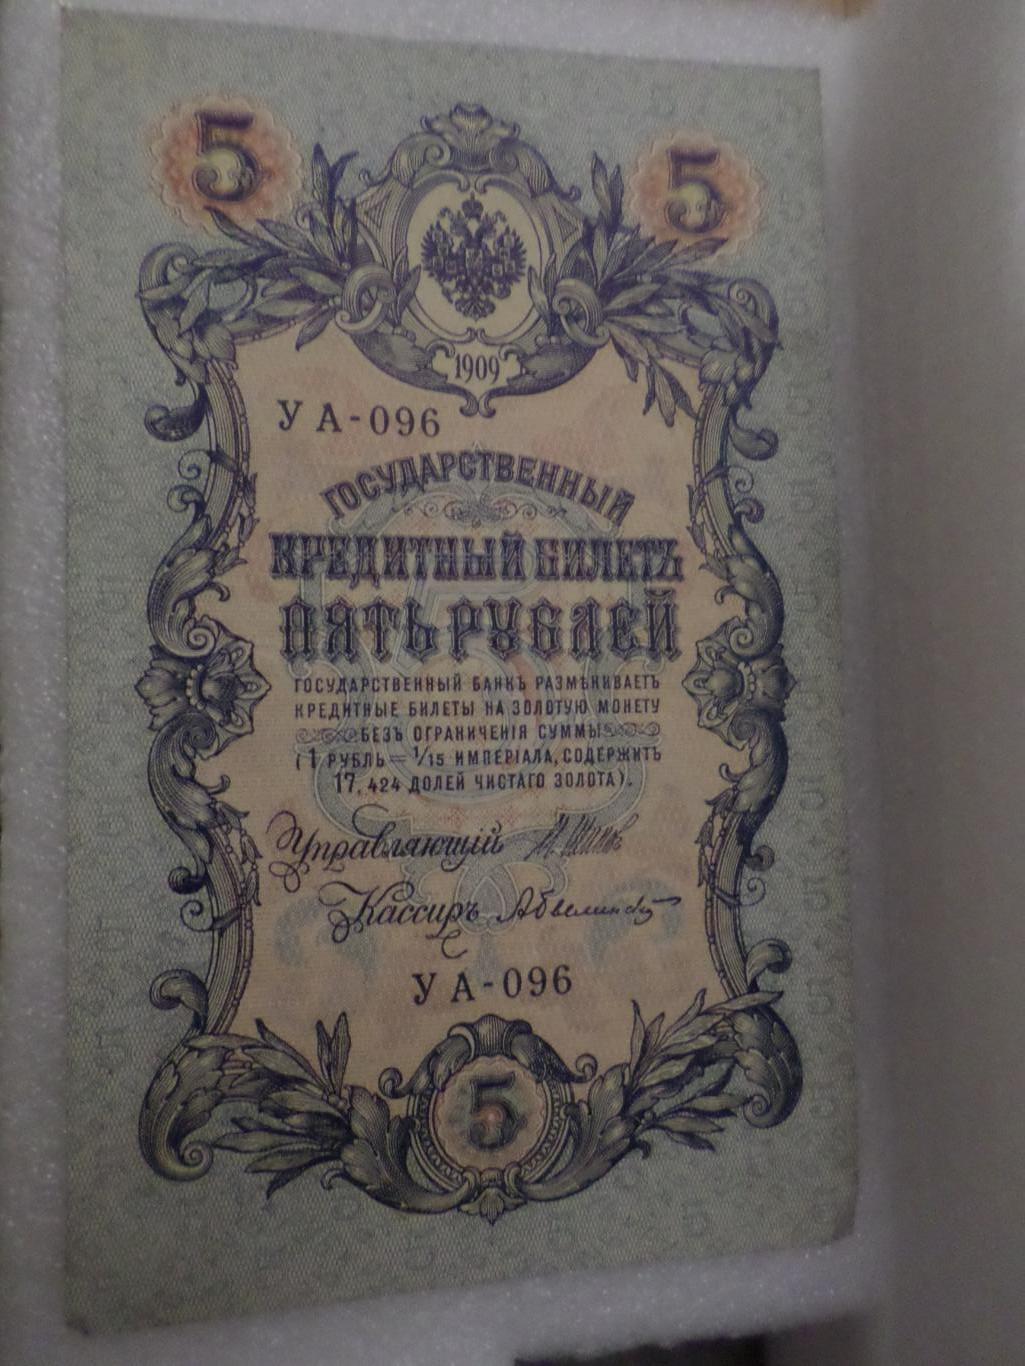 Банкнота 5 рублей 1909 г Шипов - Былинский